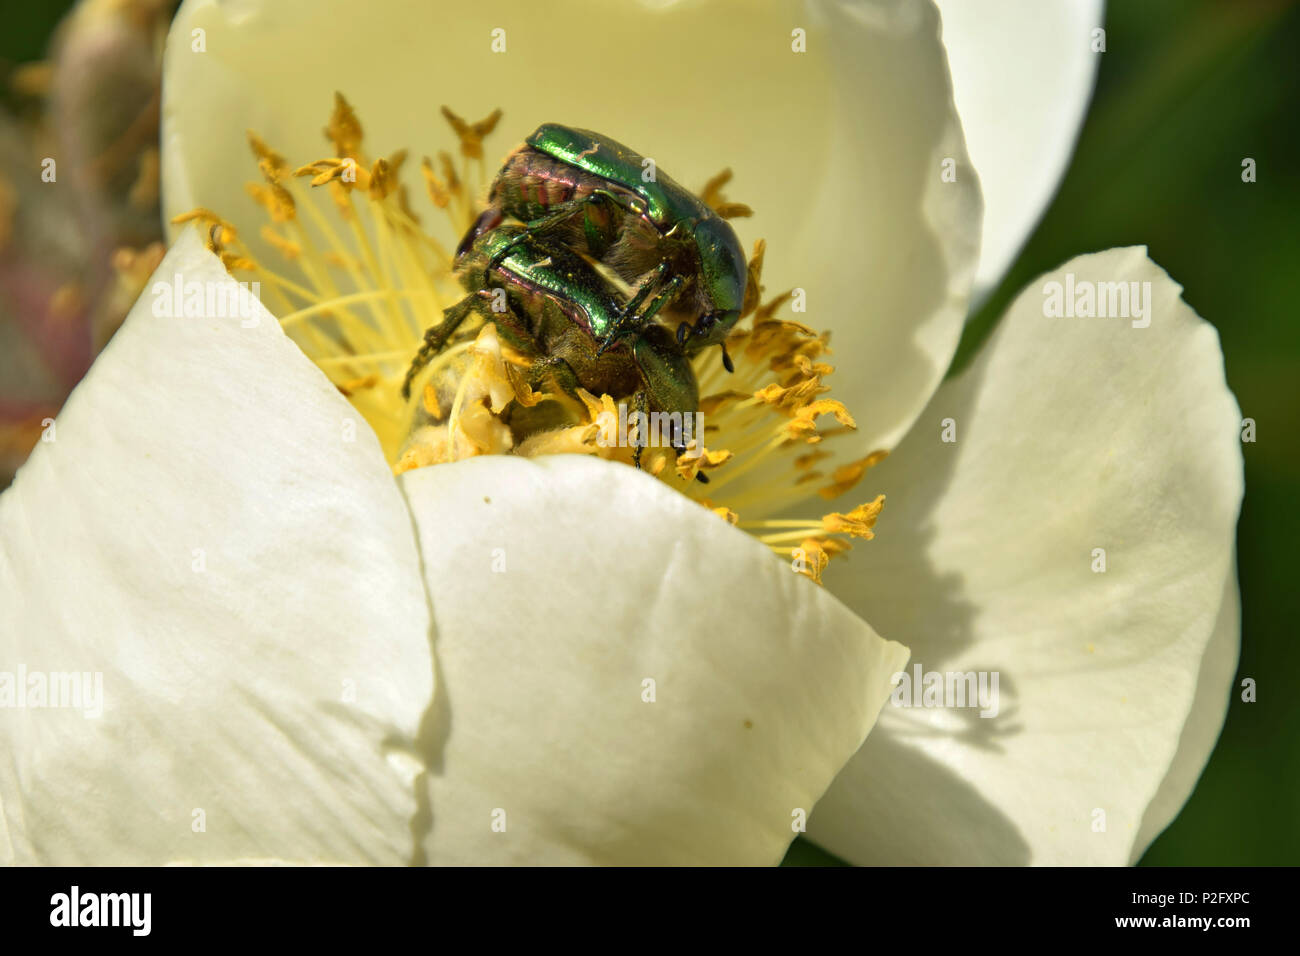 Protaetia Käfer männlichen und weiblichen Offizier auf weiße Pfingstrose, grüne golden schimmernde Käfer in Pfingstrose Blüten Stockfoto